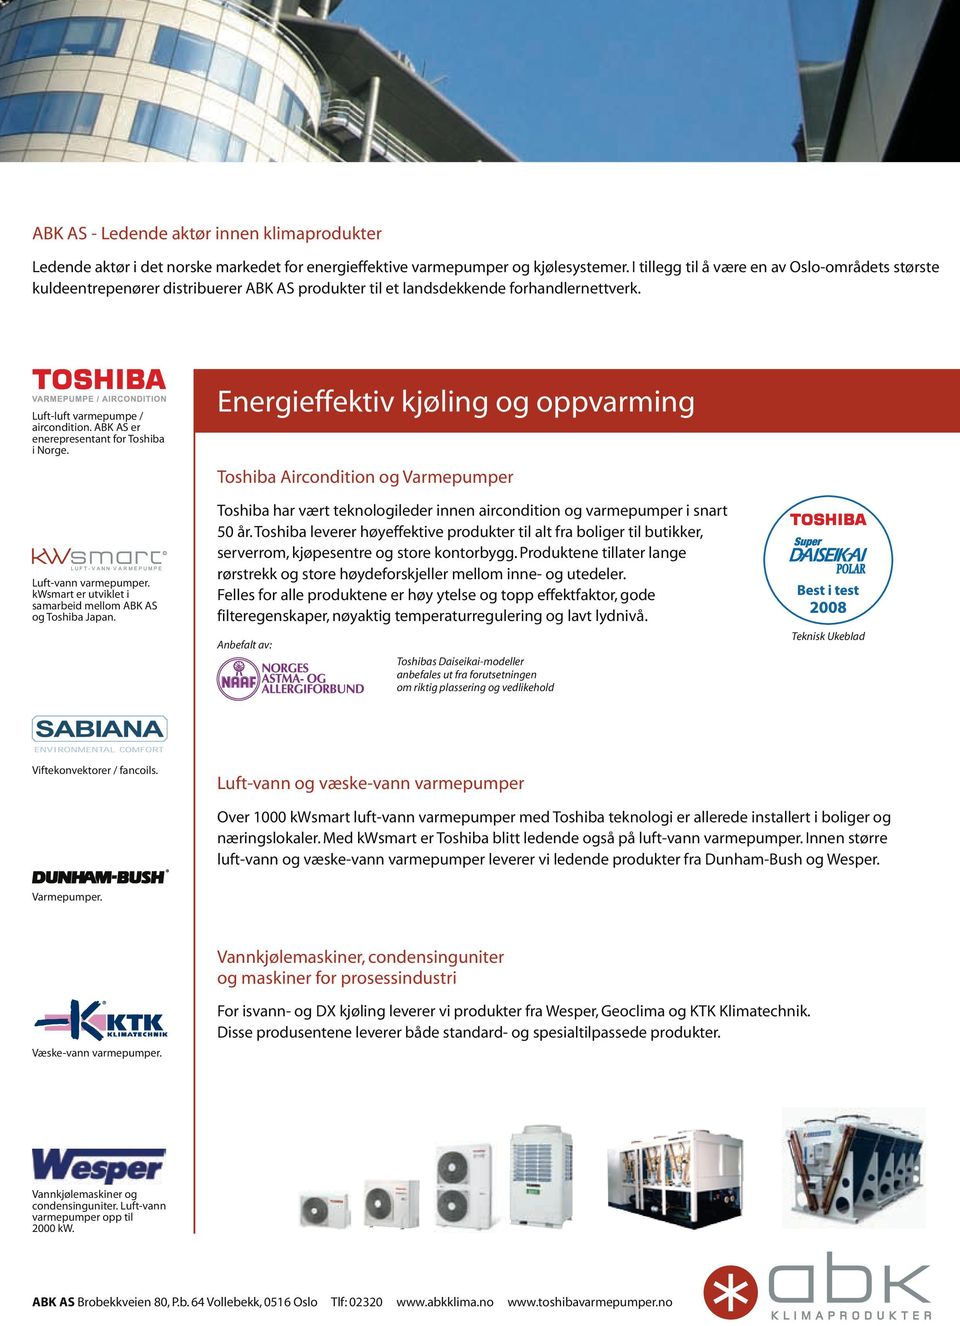 ABK AS er enerepresentant for Toshiba i Norge. Luft-vann varmepumper. kwsmart er utviklet i samarbeid mellom ABK AS og Toshiba Japan.